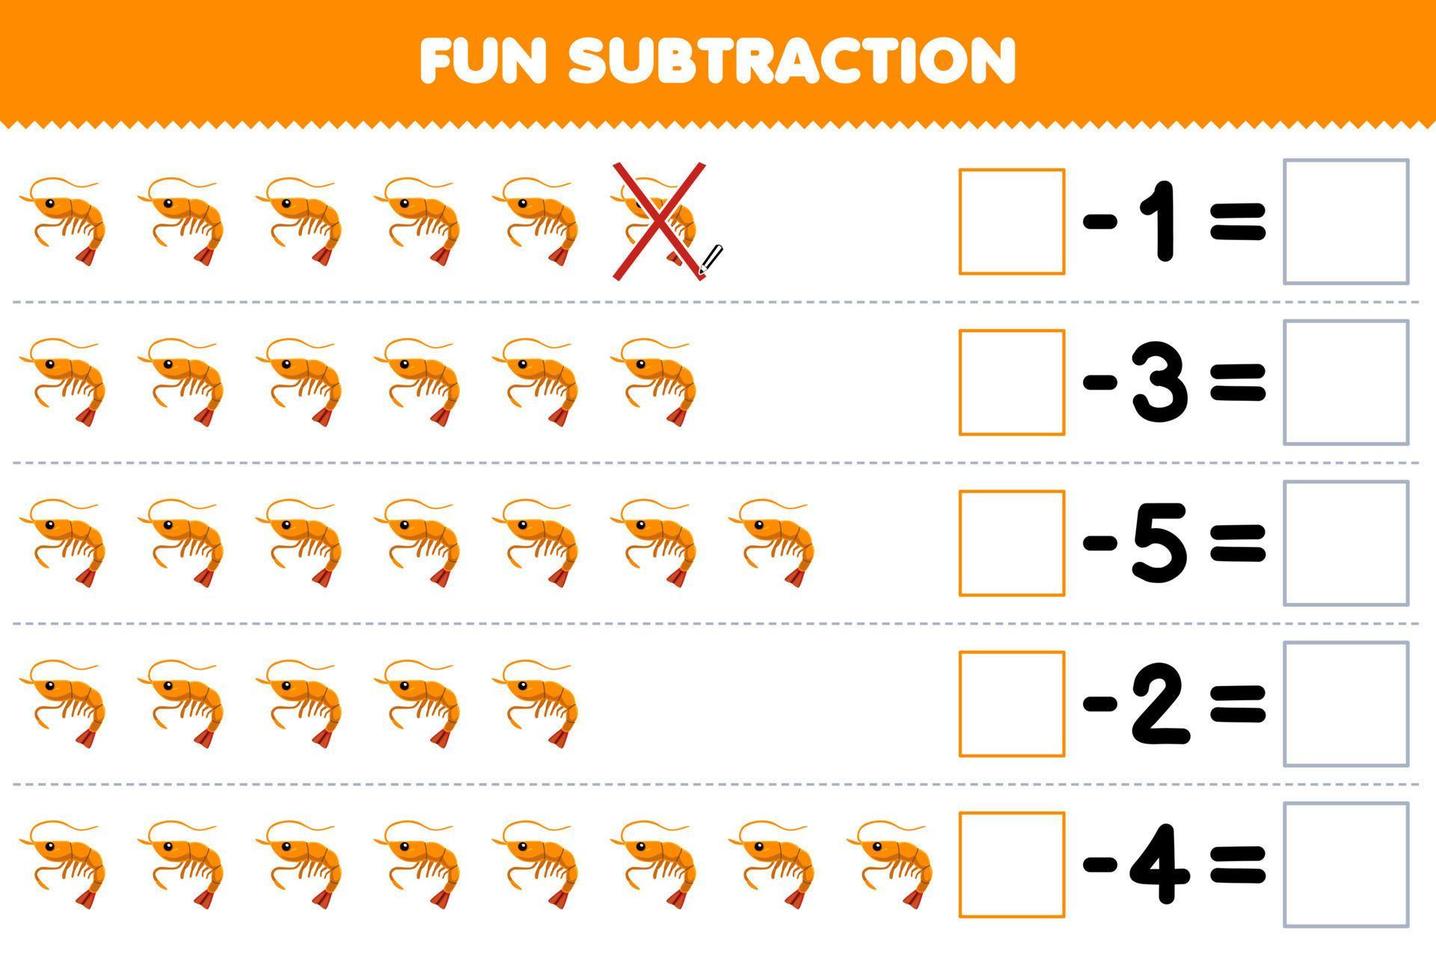 jogo educacional para subtração divertida para crianças, contando camarões de desenho animado fofos em cada linha e eliminando-os planilha subaquática imprimível vetor